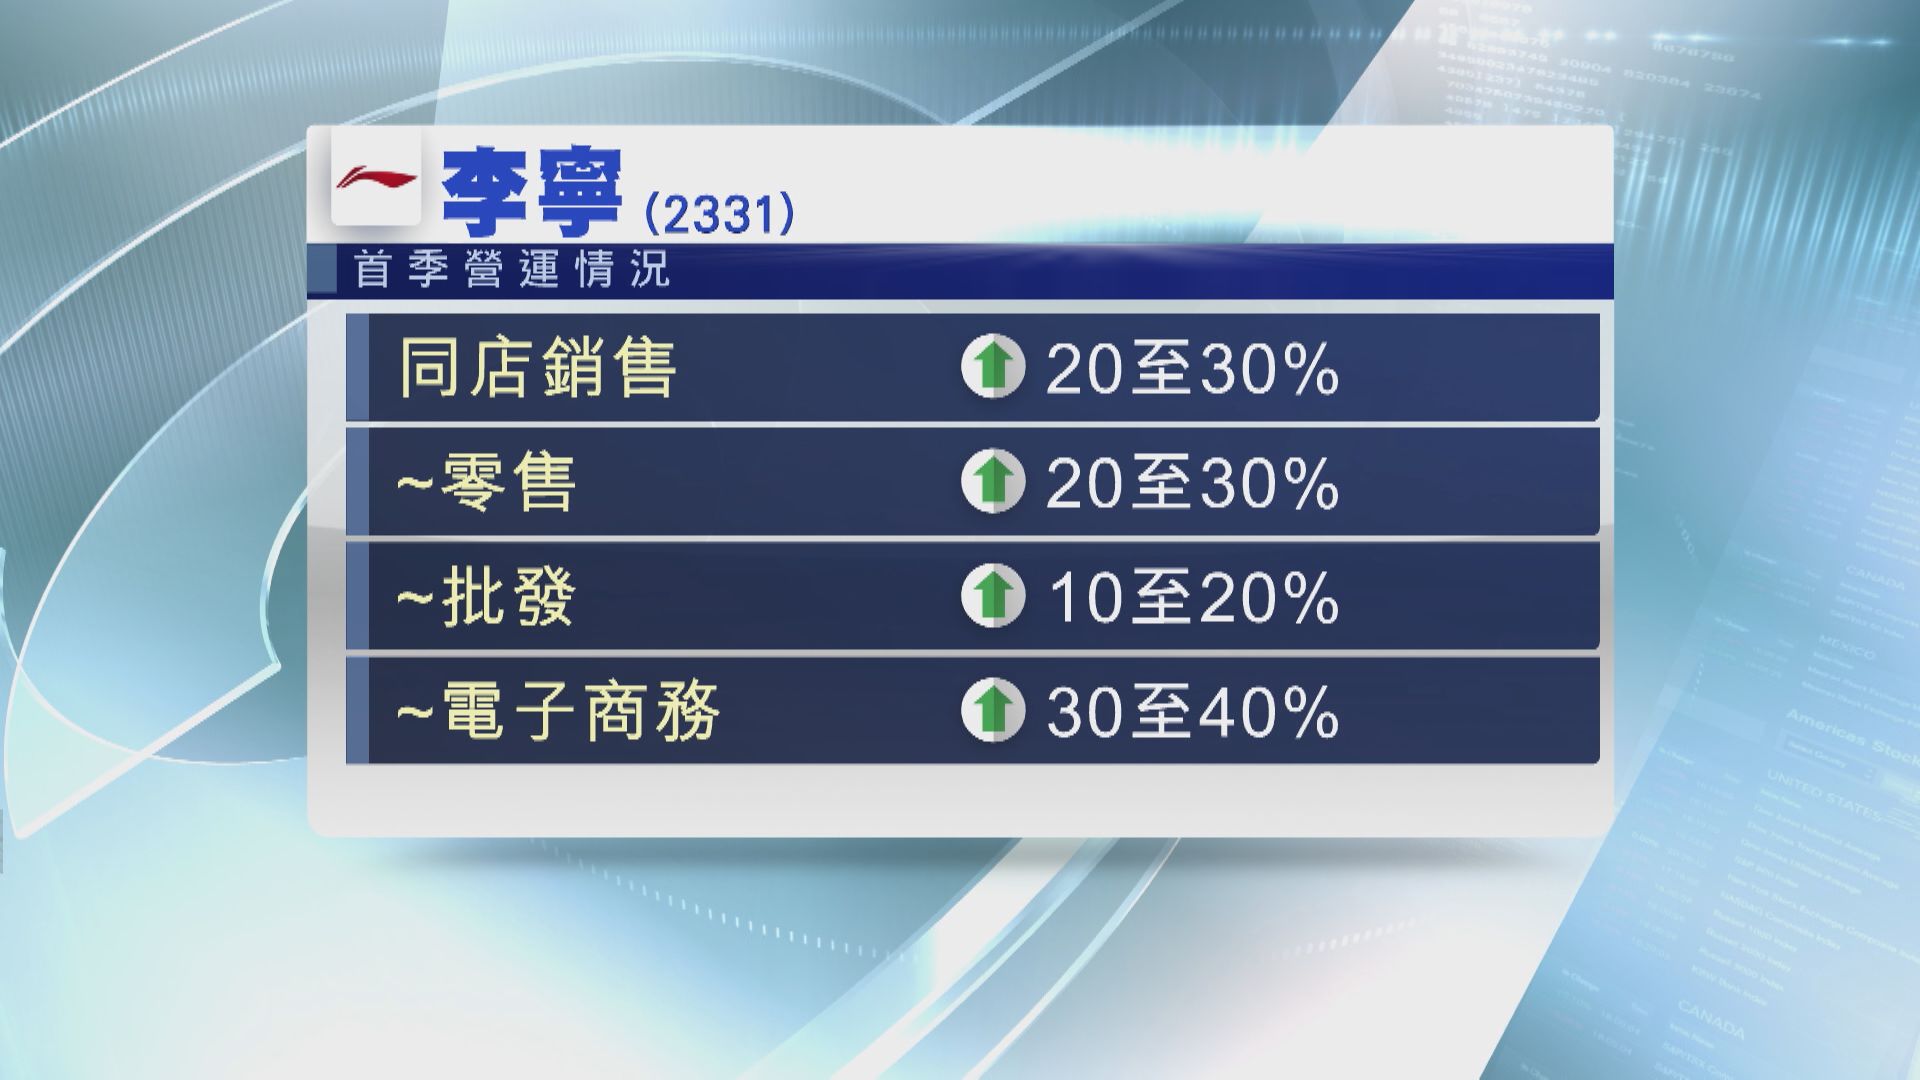 【營運數據】李寧首季同店銷售增長20%至30%